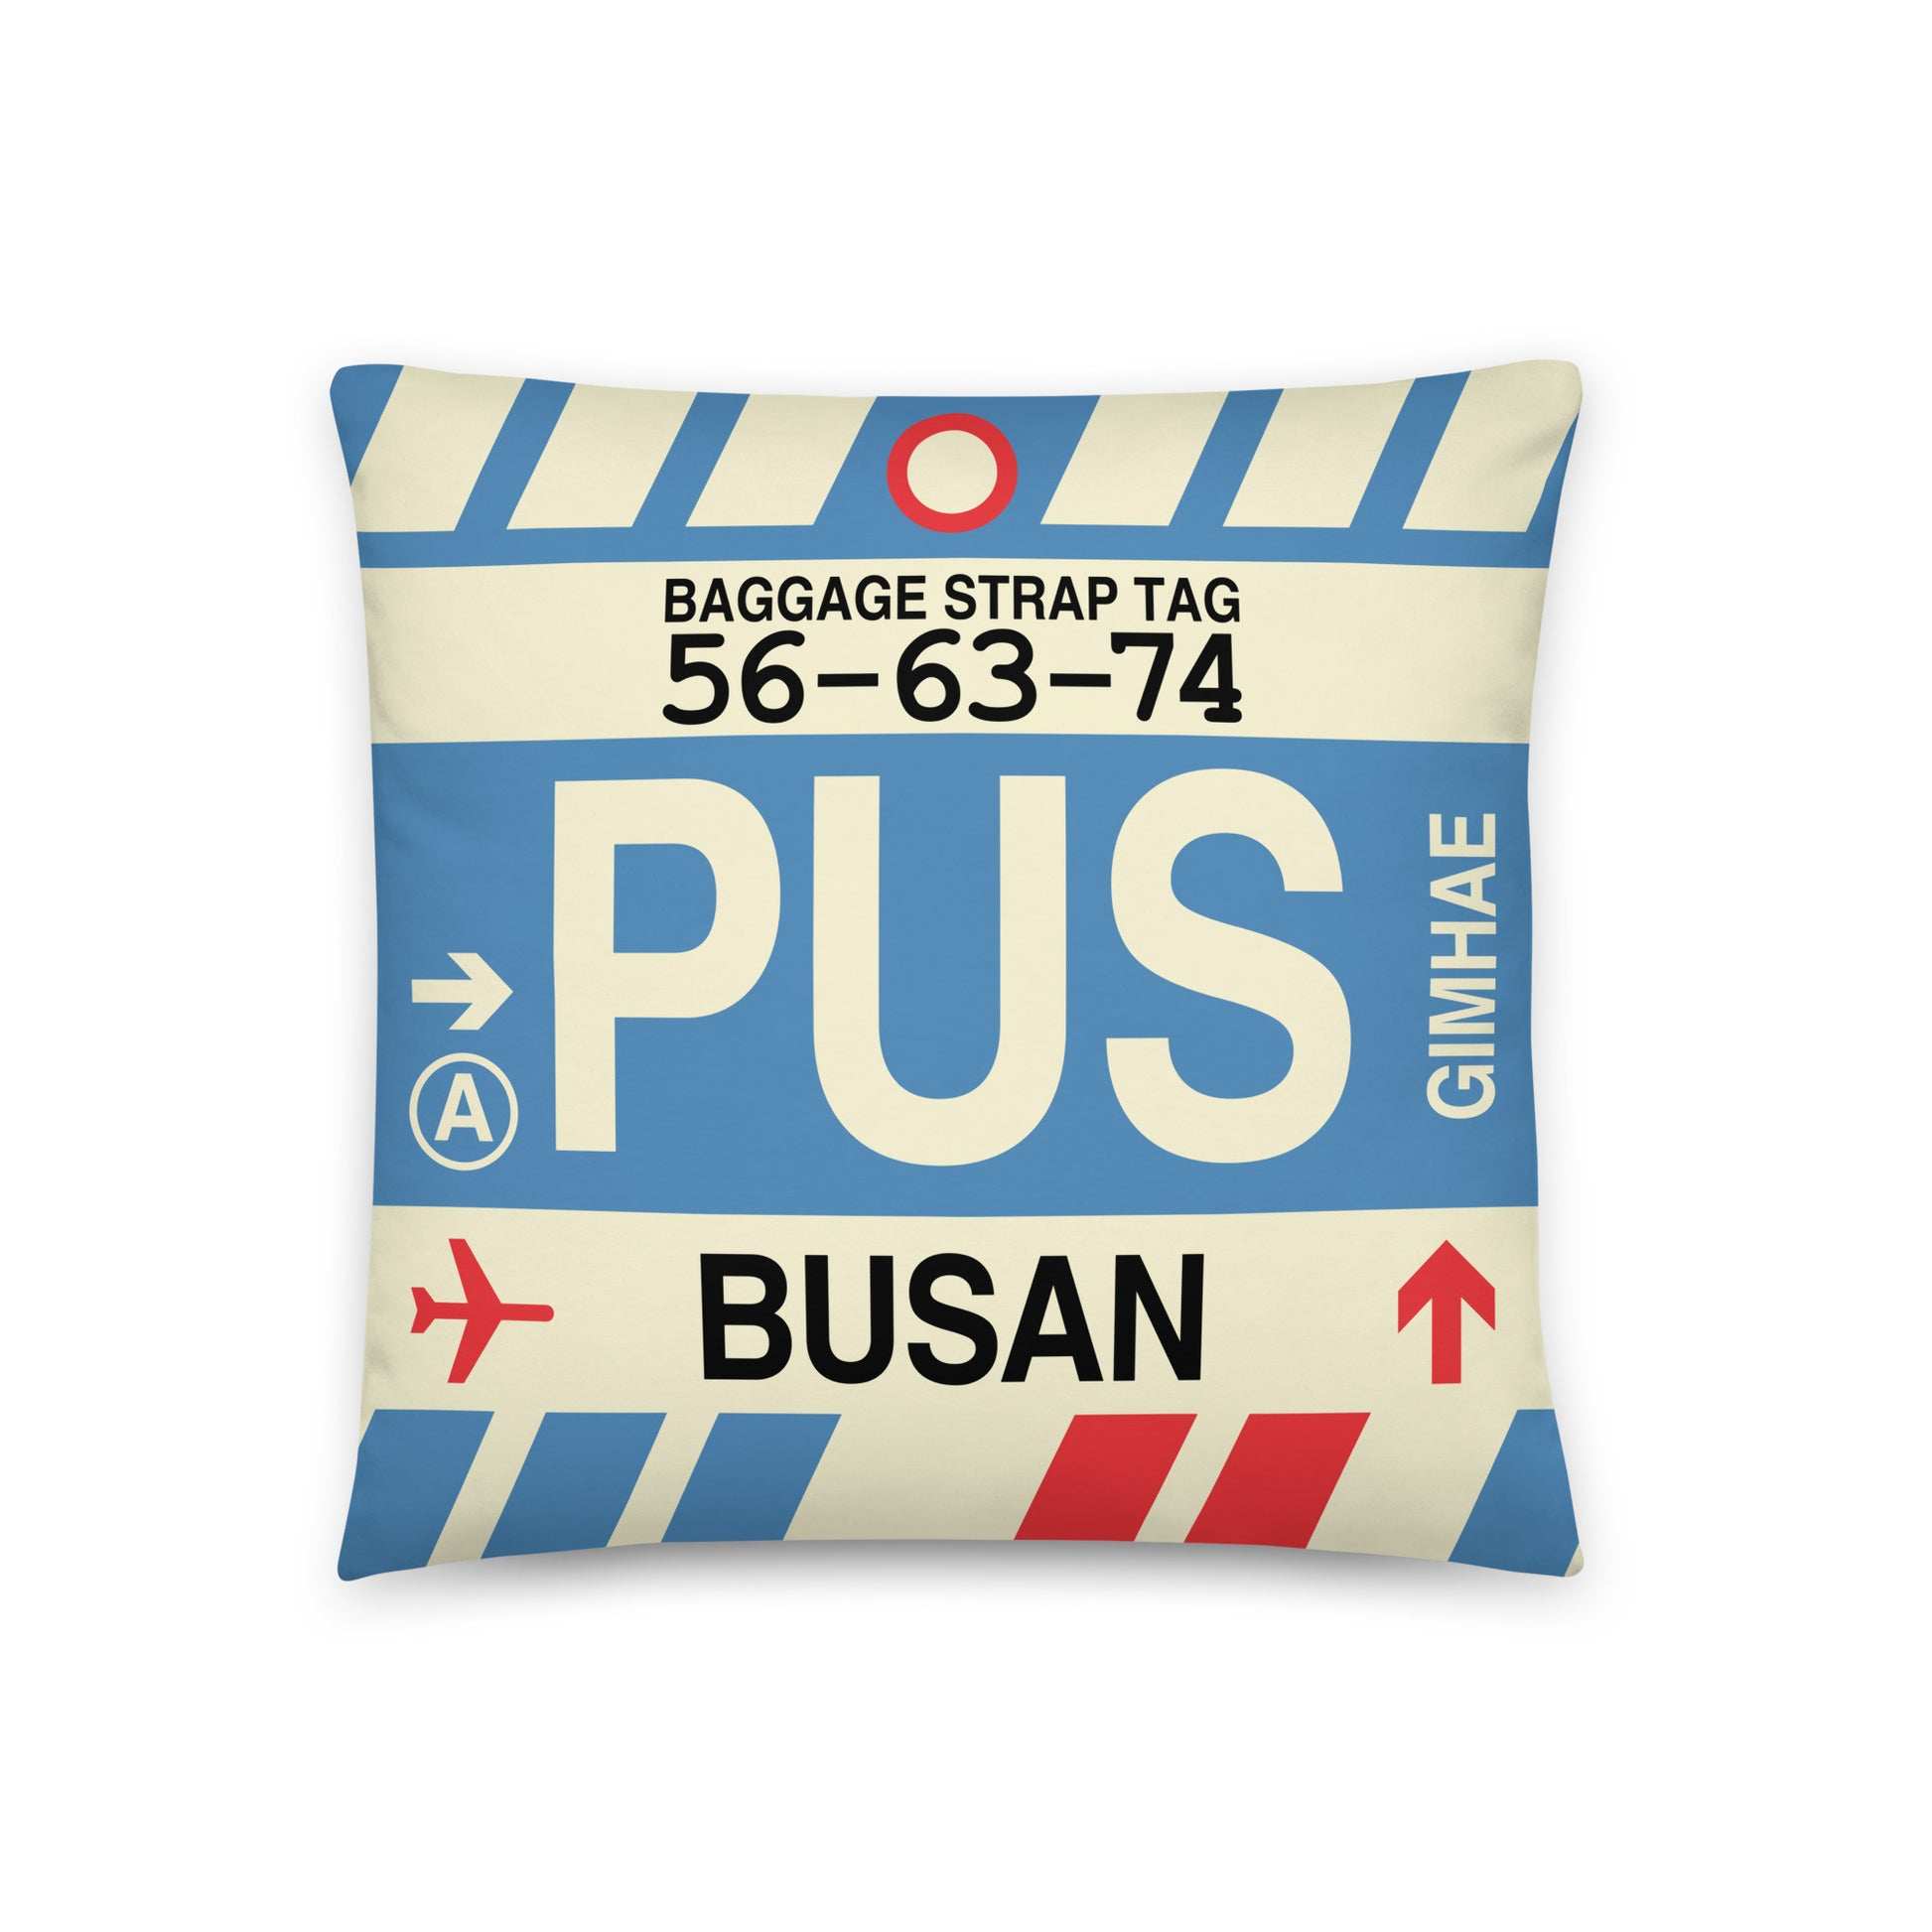 Travel Gift Throw PIllow • PUS Busan • YHM Designs - Image 01